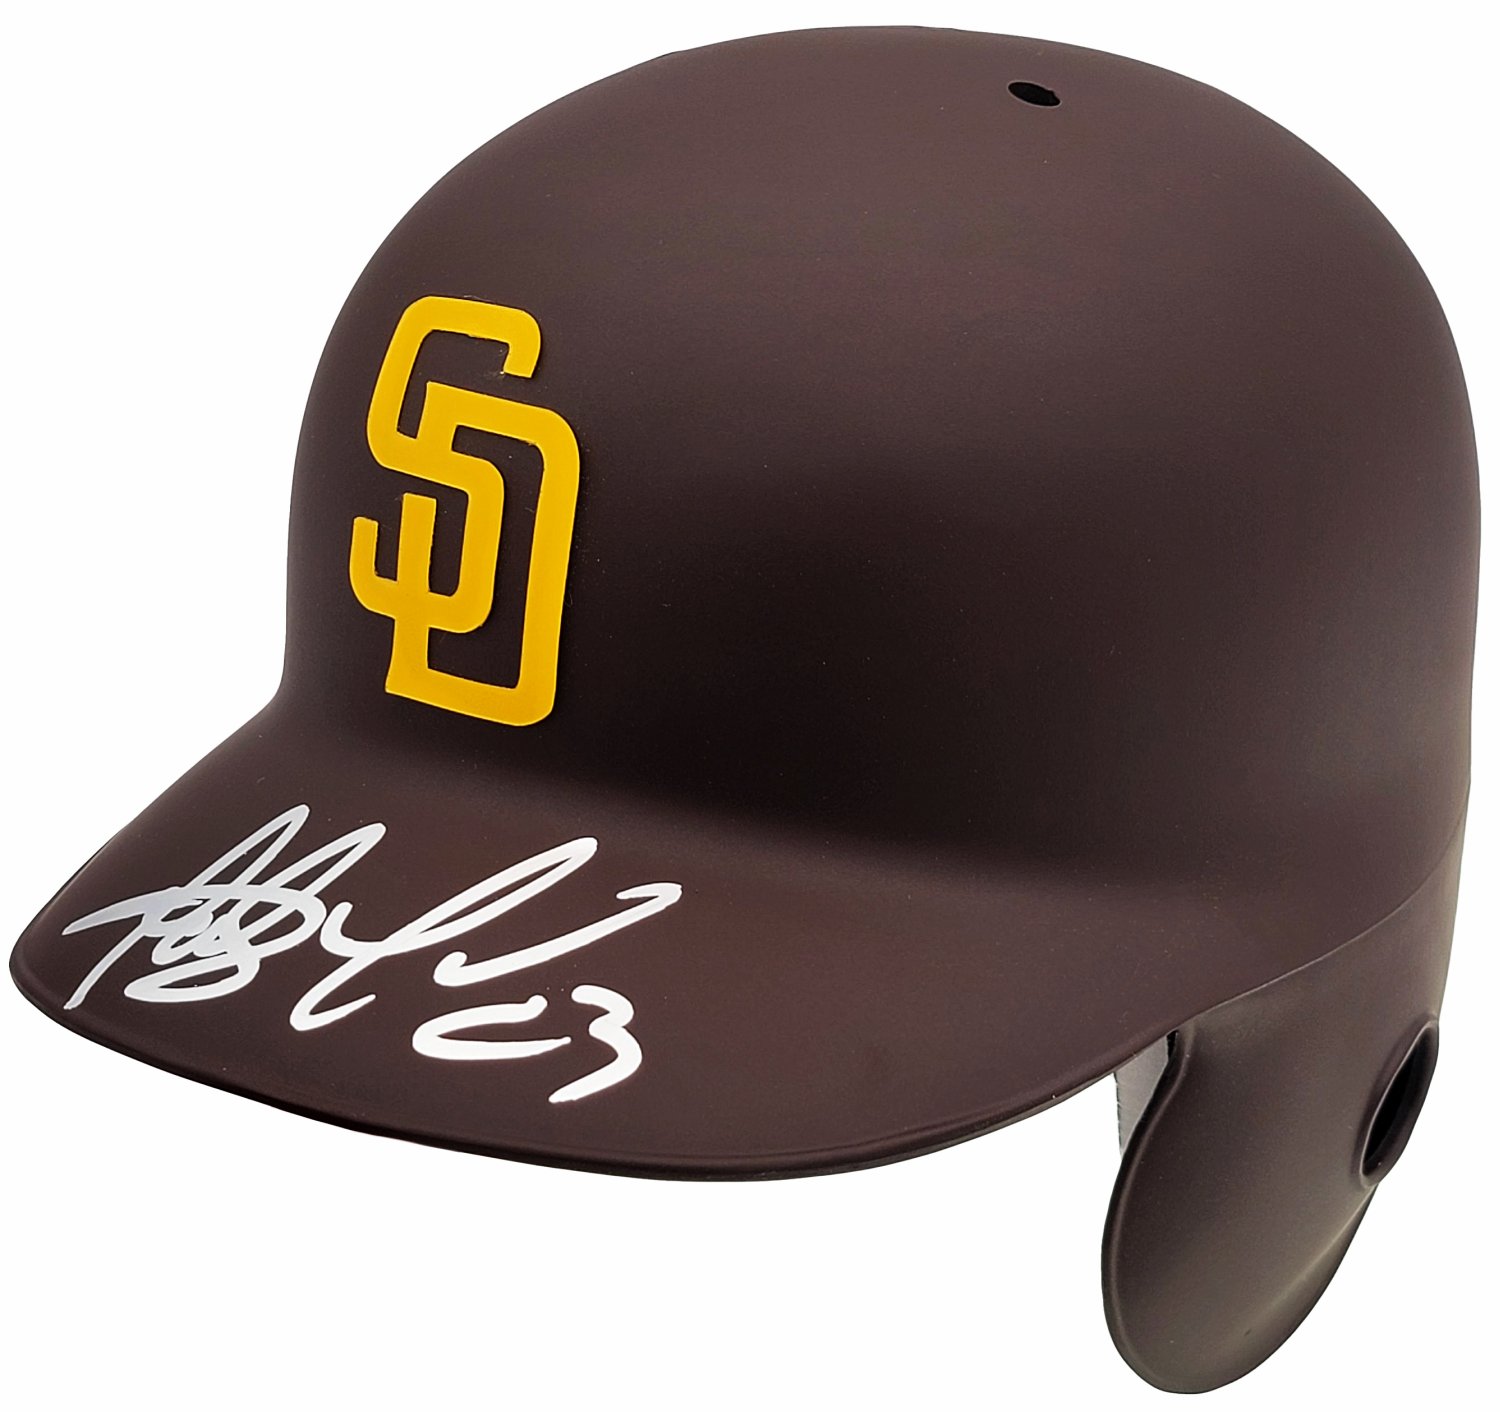 Framed Fernando Tatis Jr Autographed Signed San Diego Padres